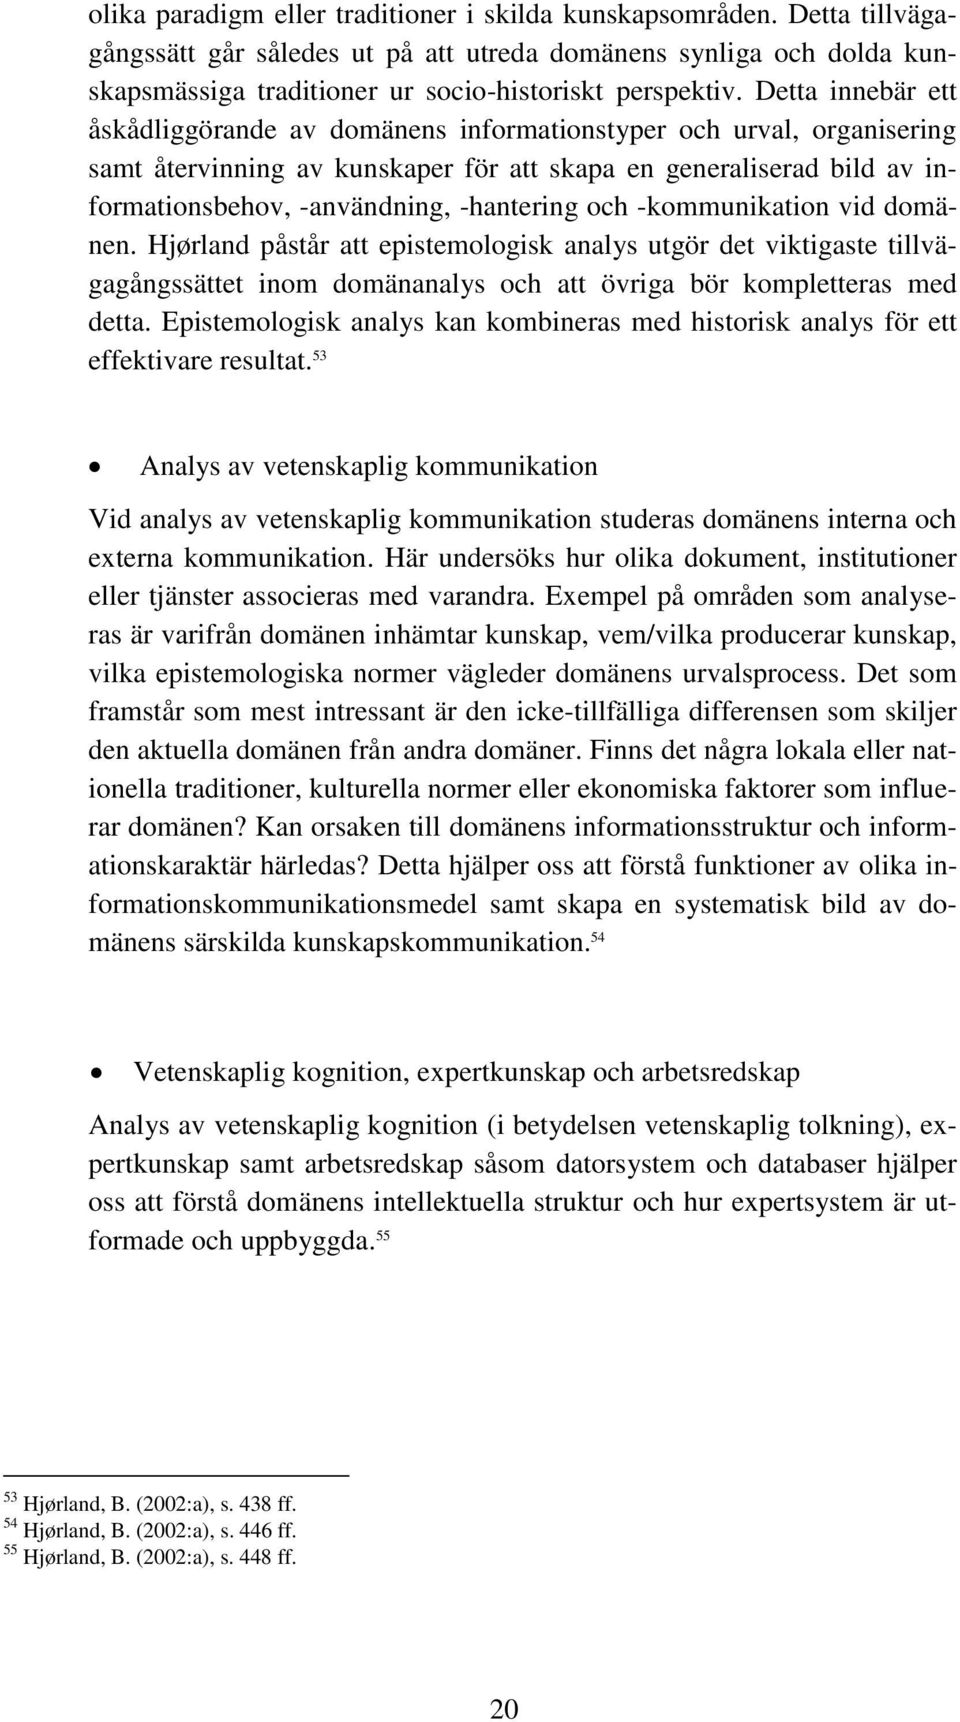 och -kommunikation vid domänen. Hjørland påstår att epistemologisk analys utgör det viktigaste tillvägagångssättet inom domänanalys och att övriga bör kompletteras med detta.